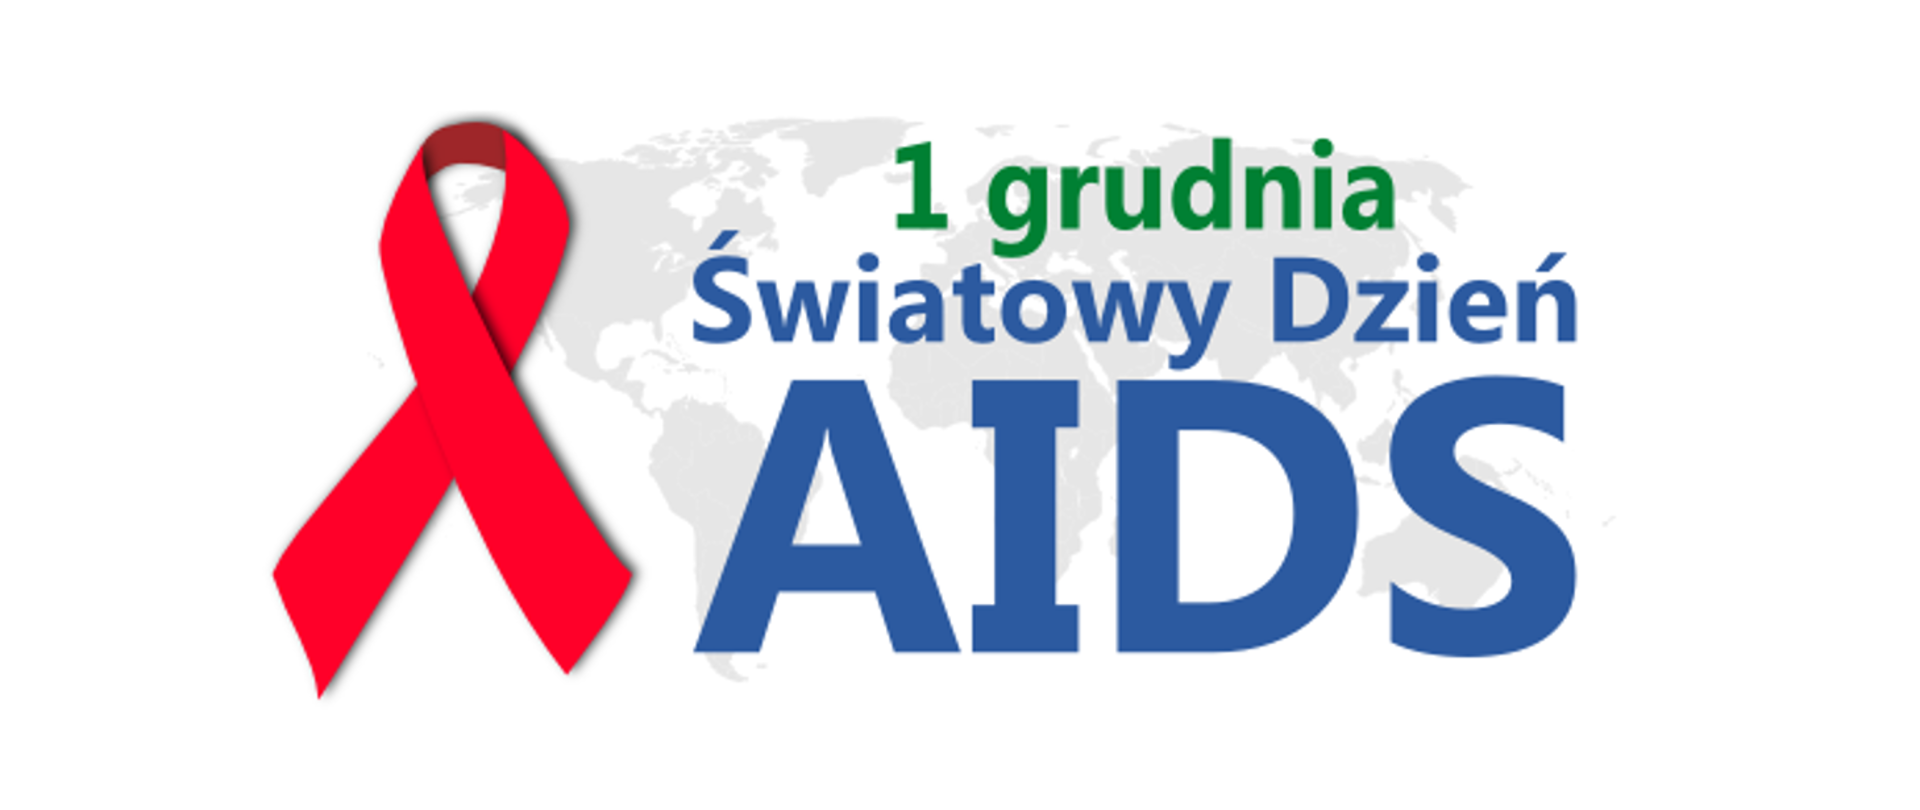 
Światowy Dzień AIDS - 1 grudnia
